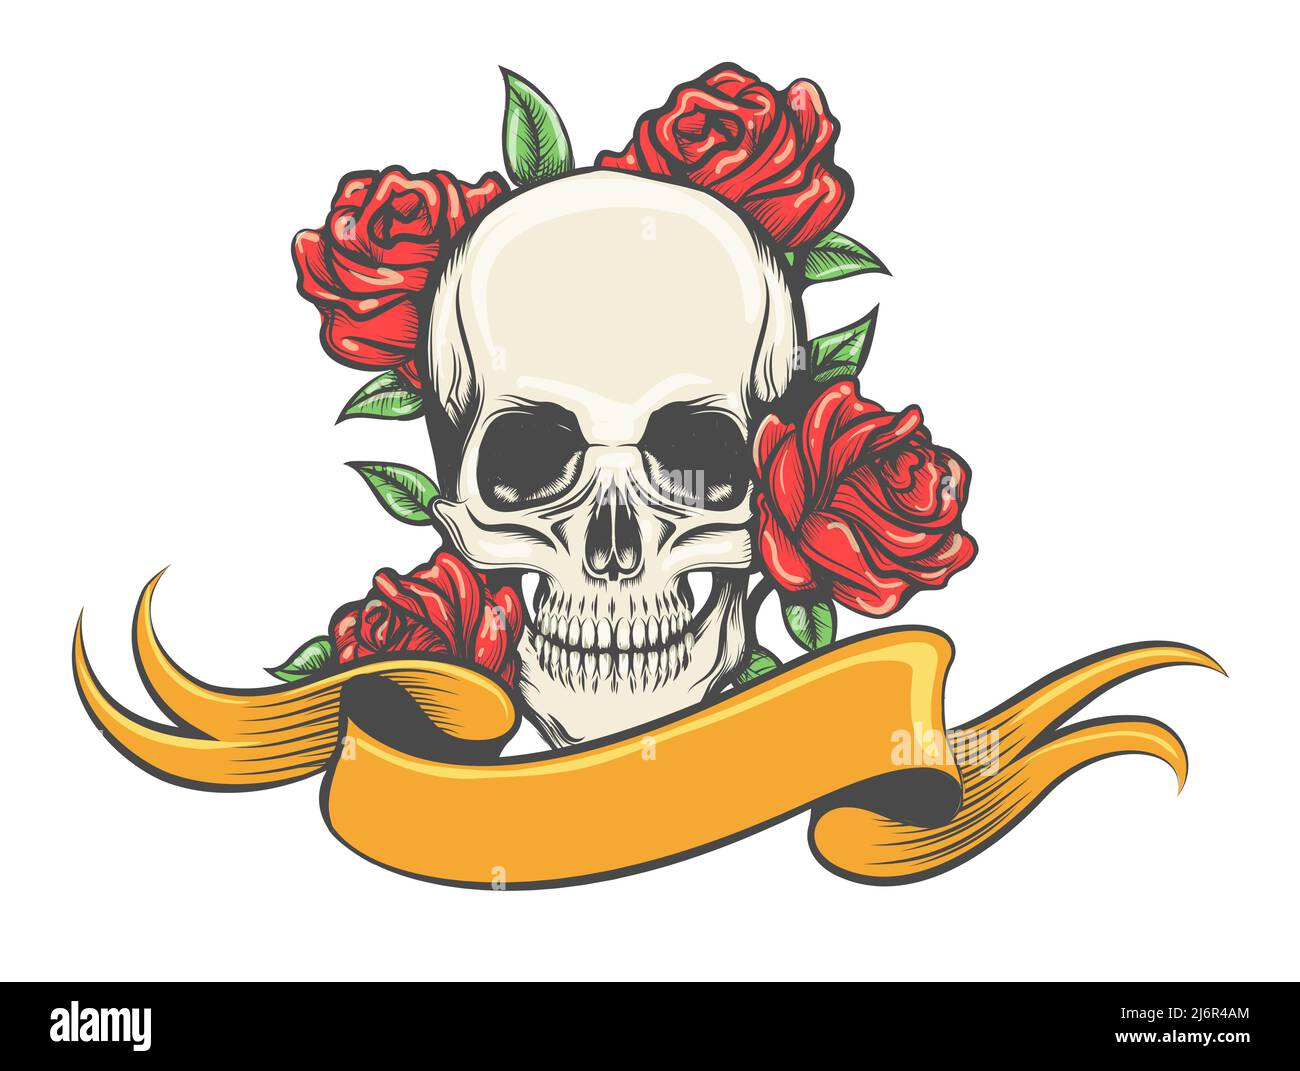 Tatouage de crâne avec roses et bannière dessiné en style gravure isolé sur blanc. Illustration vectorielle. Illustration de Vecteur